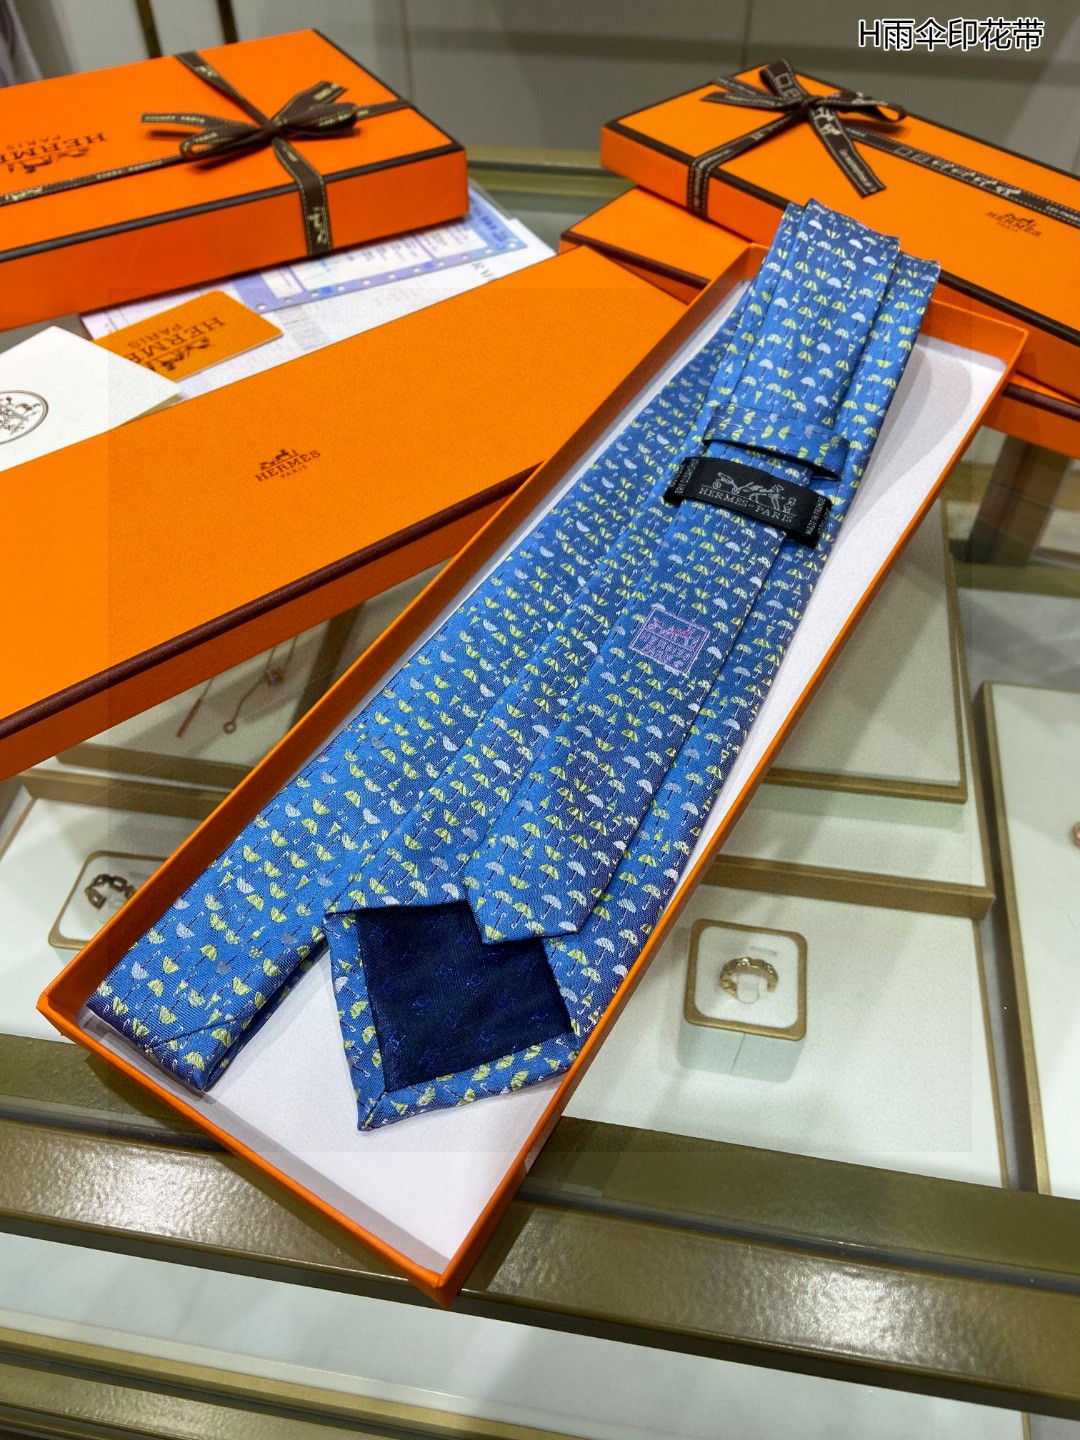 特价男士新款领带系列H雨伞印花领带稀有H家每年都有一千条不同印花的领带面世从最初的多以几何图案表现骑术活